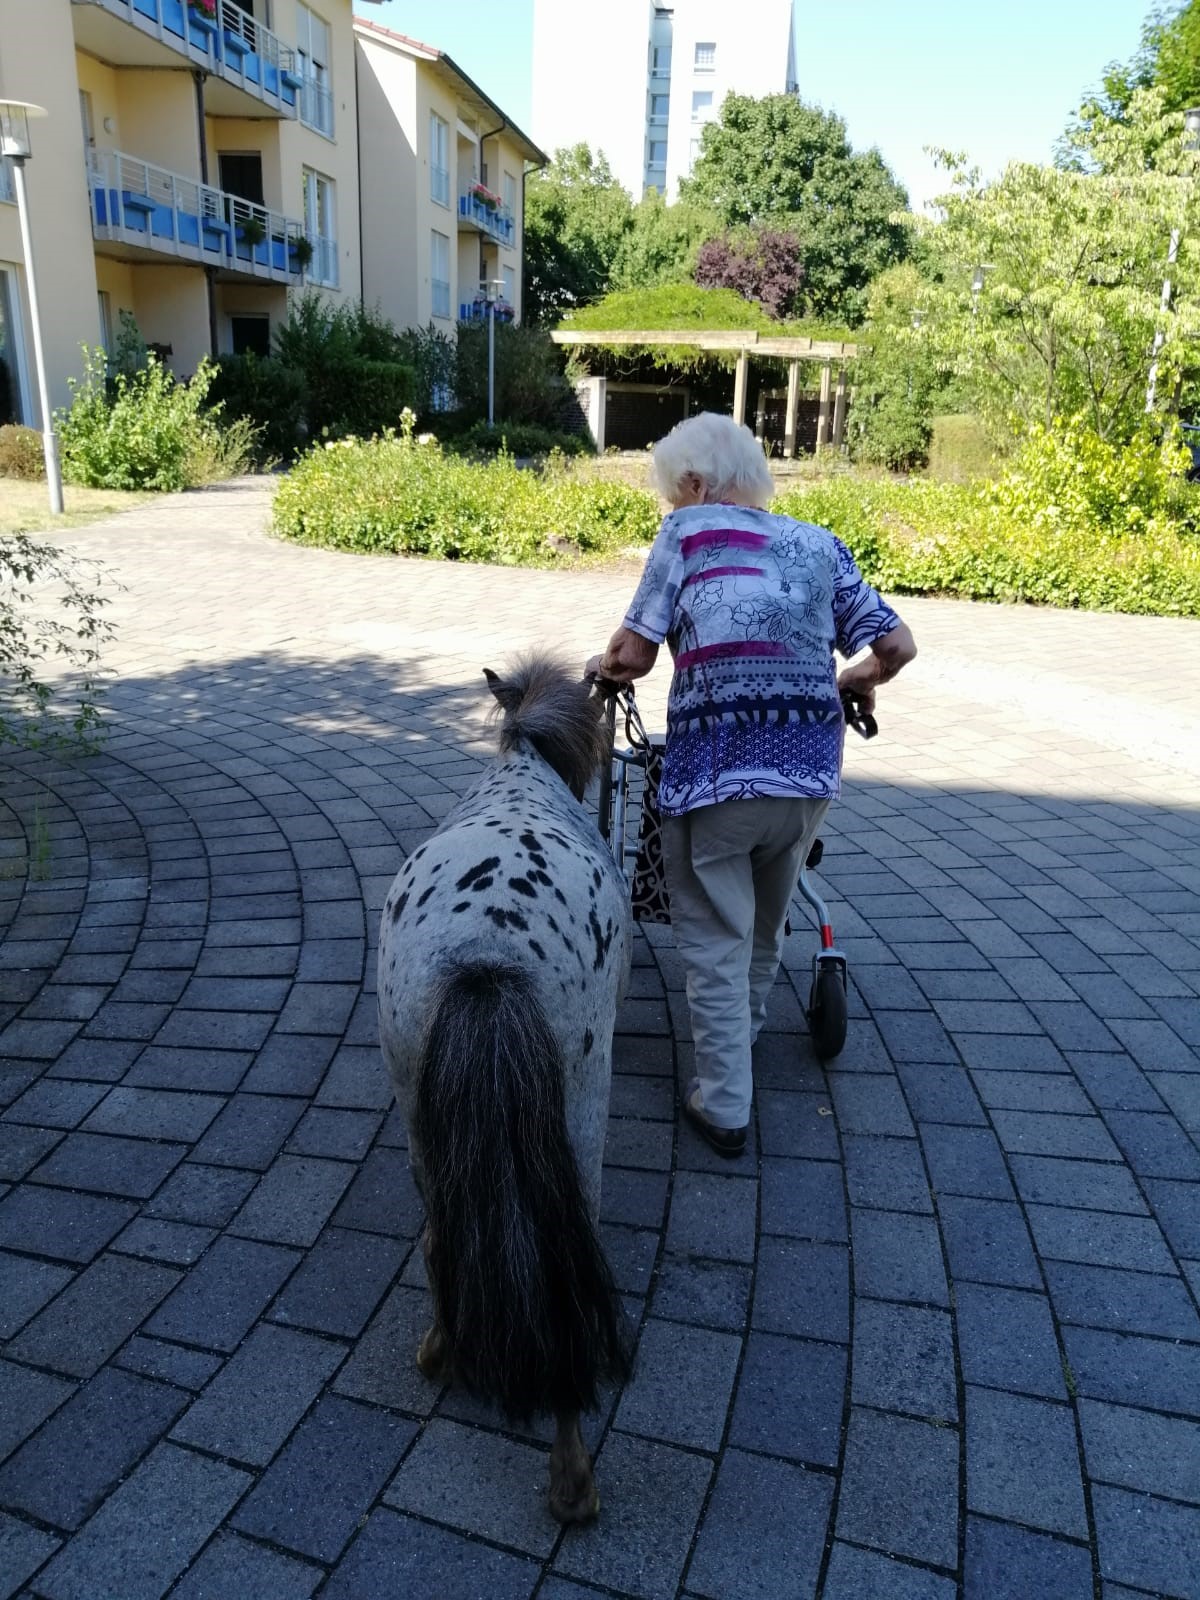 Bewohnerin die mit einem Pony spazieren geht